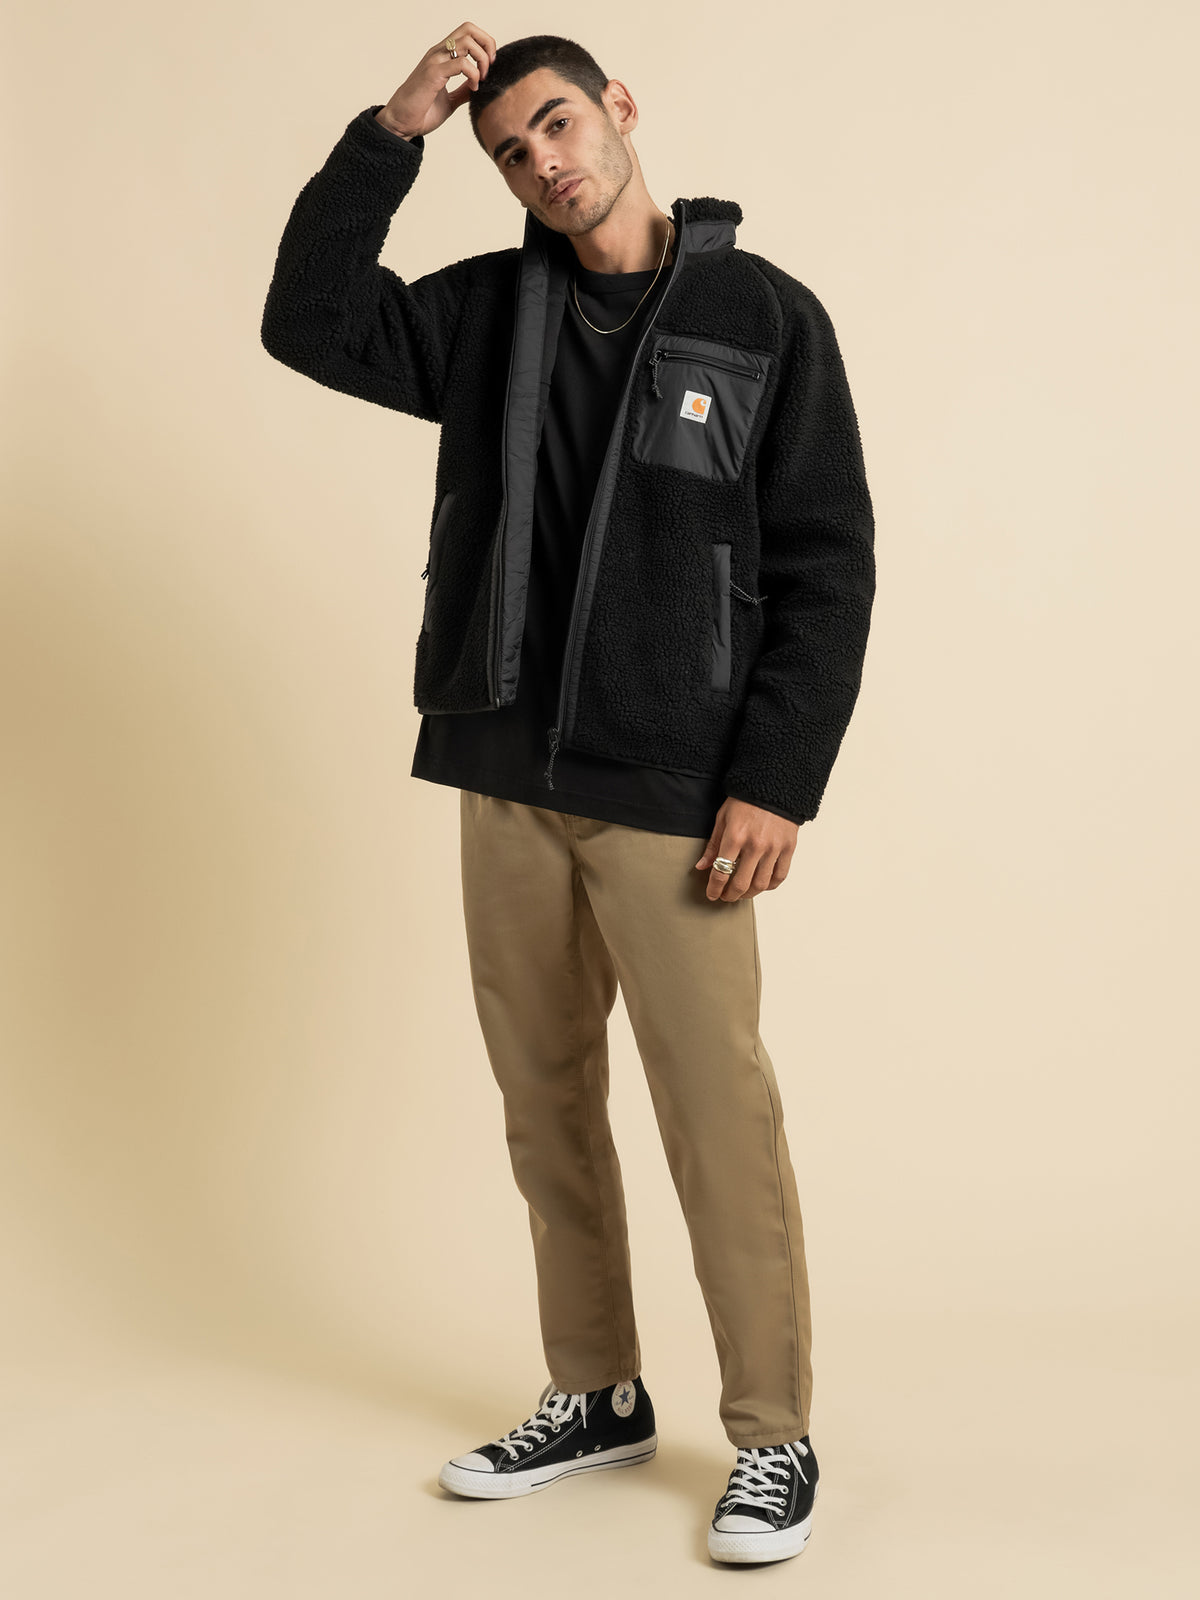 Prentis Liner Sherpa Jacket in Black